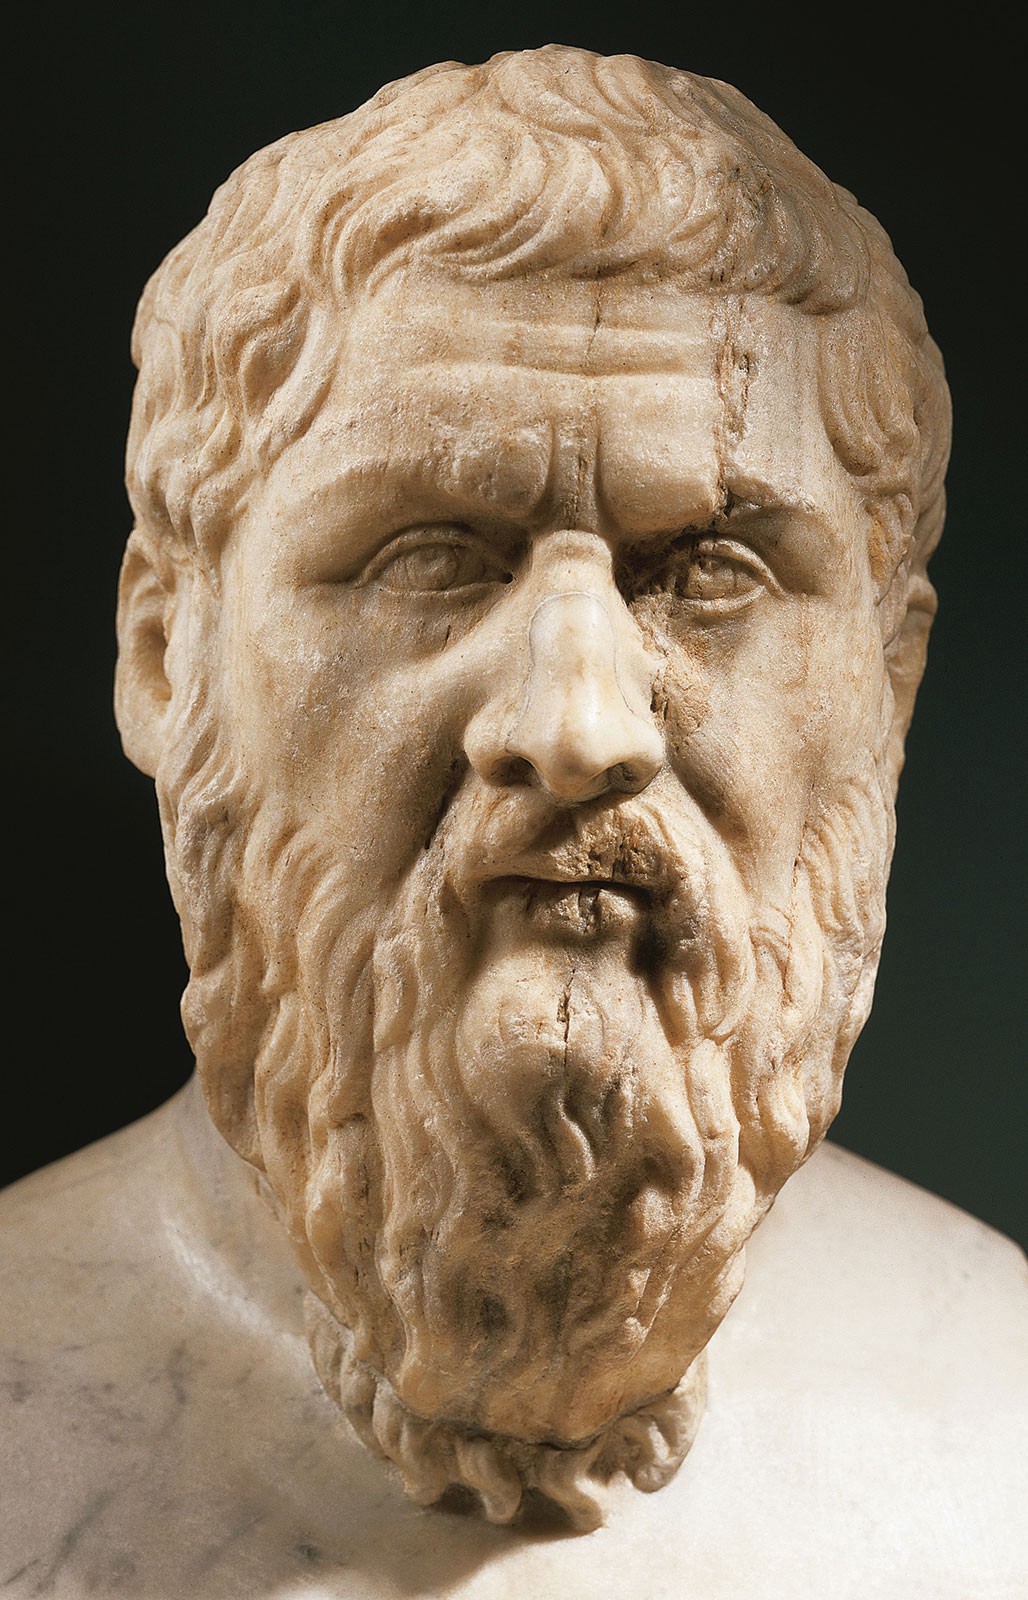 Plato prob 4th BC